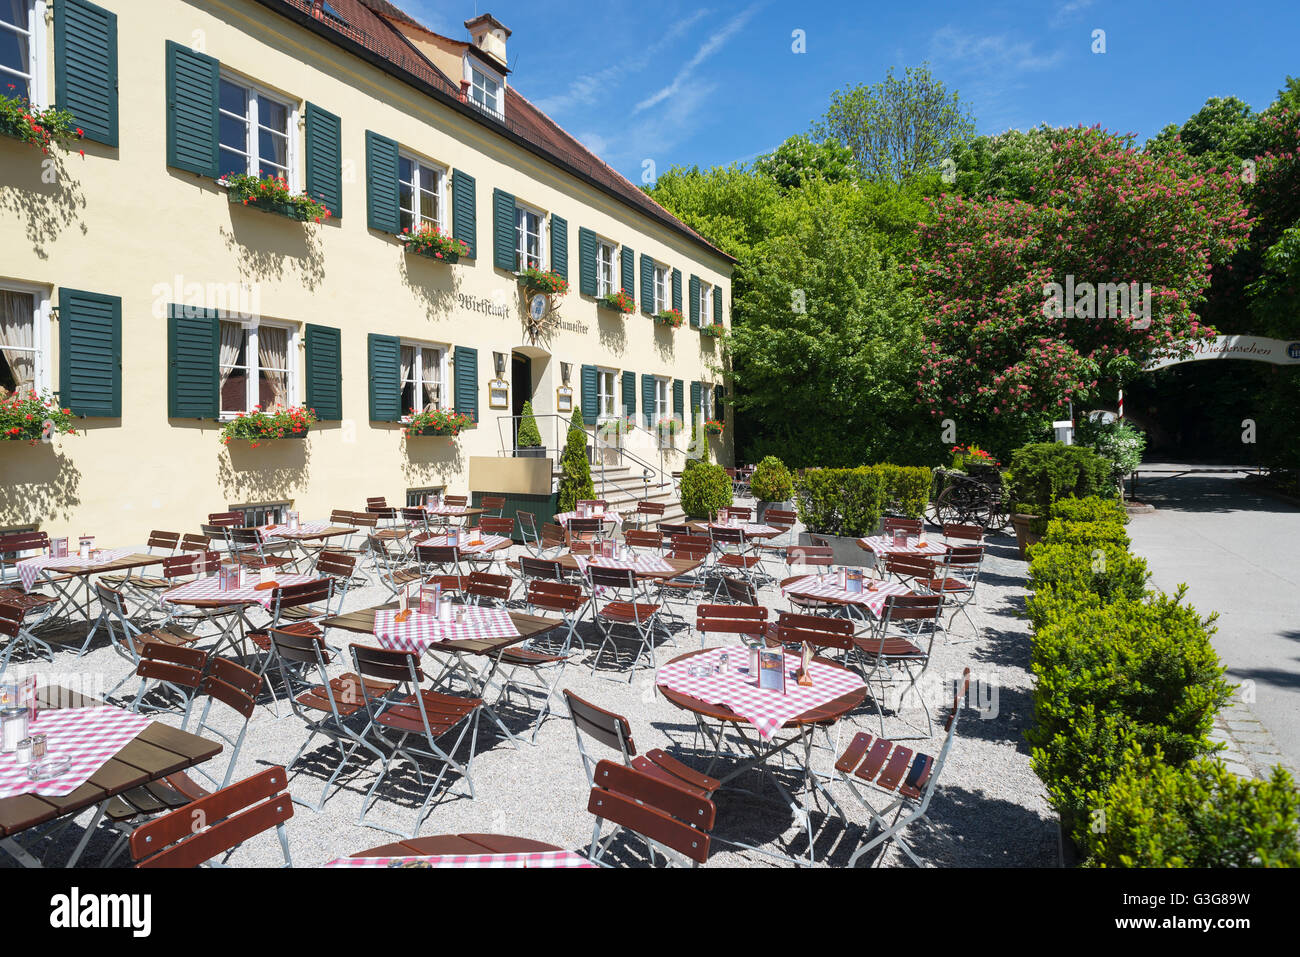 Tische und Stühle vor der Fassade des Restaurant Aumeister im englischen  Garten in München, Bayern, Deutschland Stockfotografie - Alamy